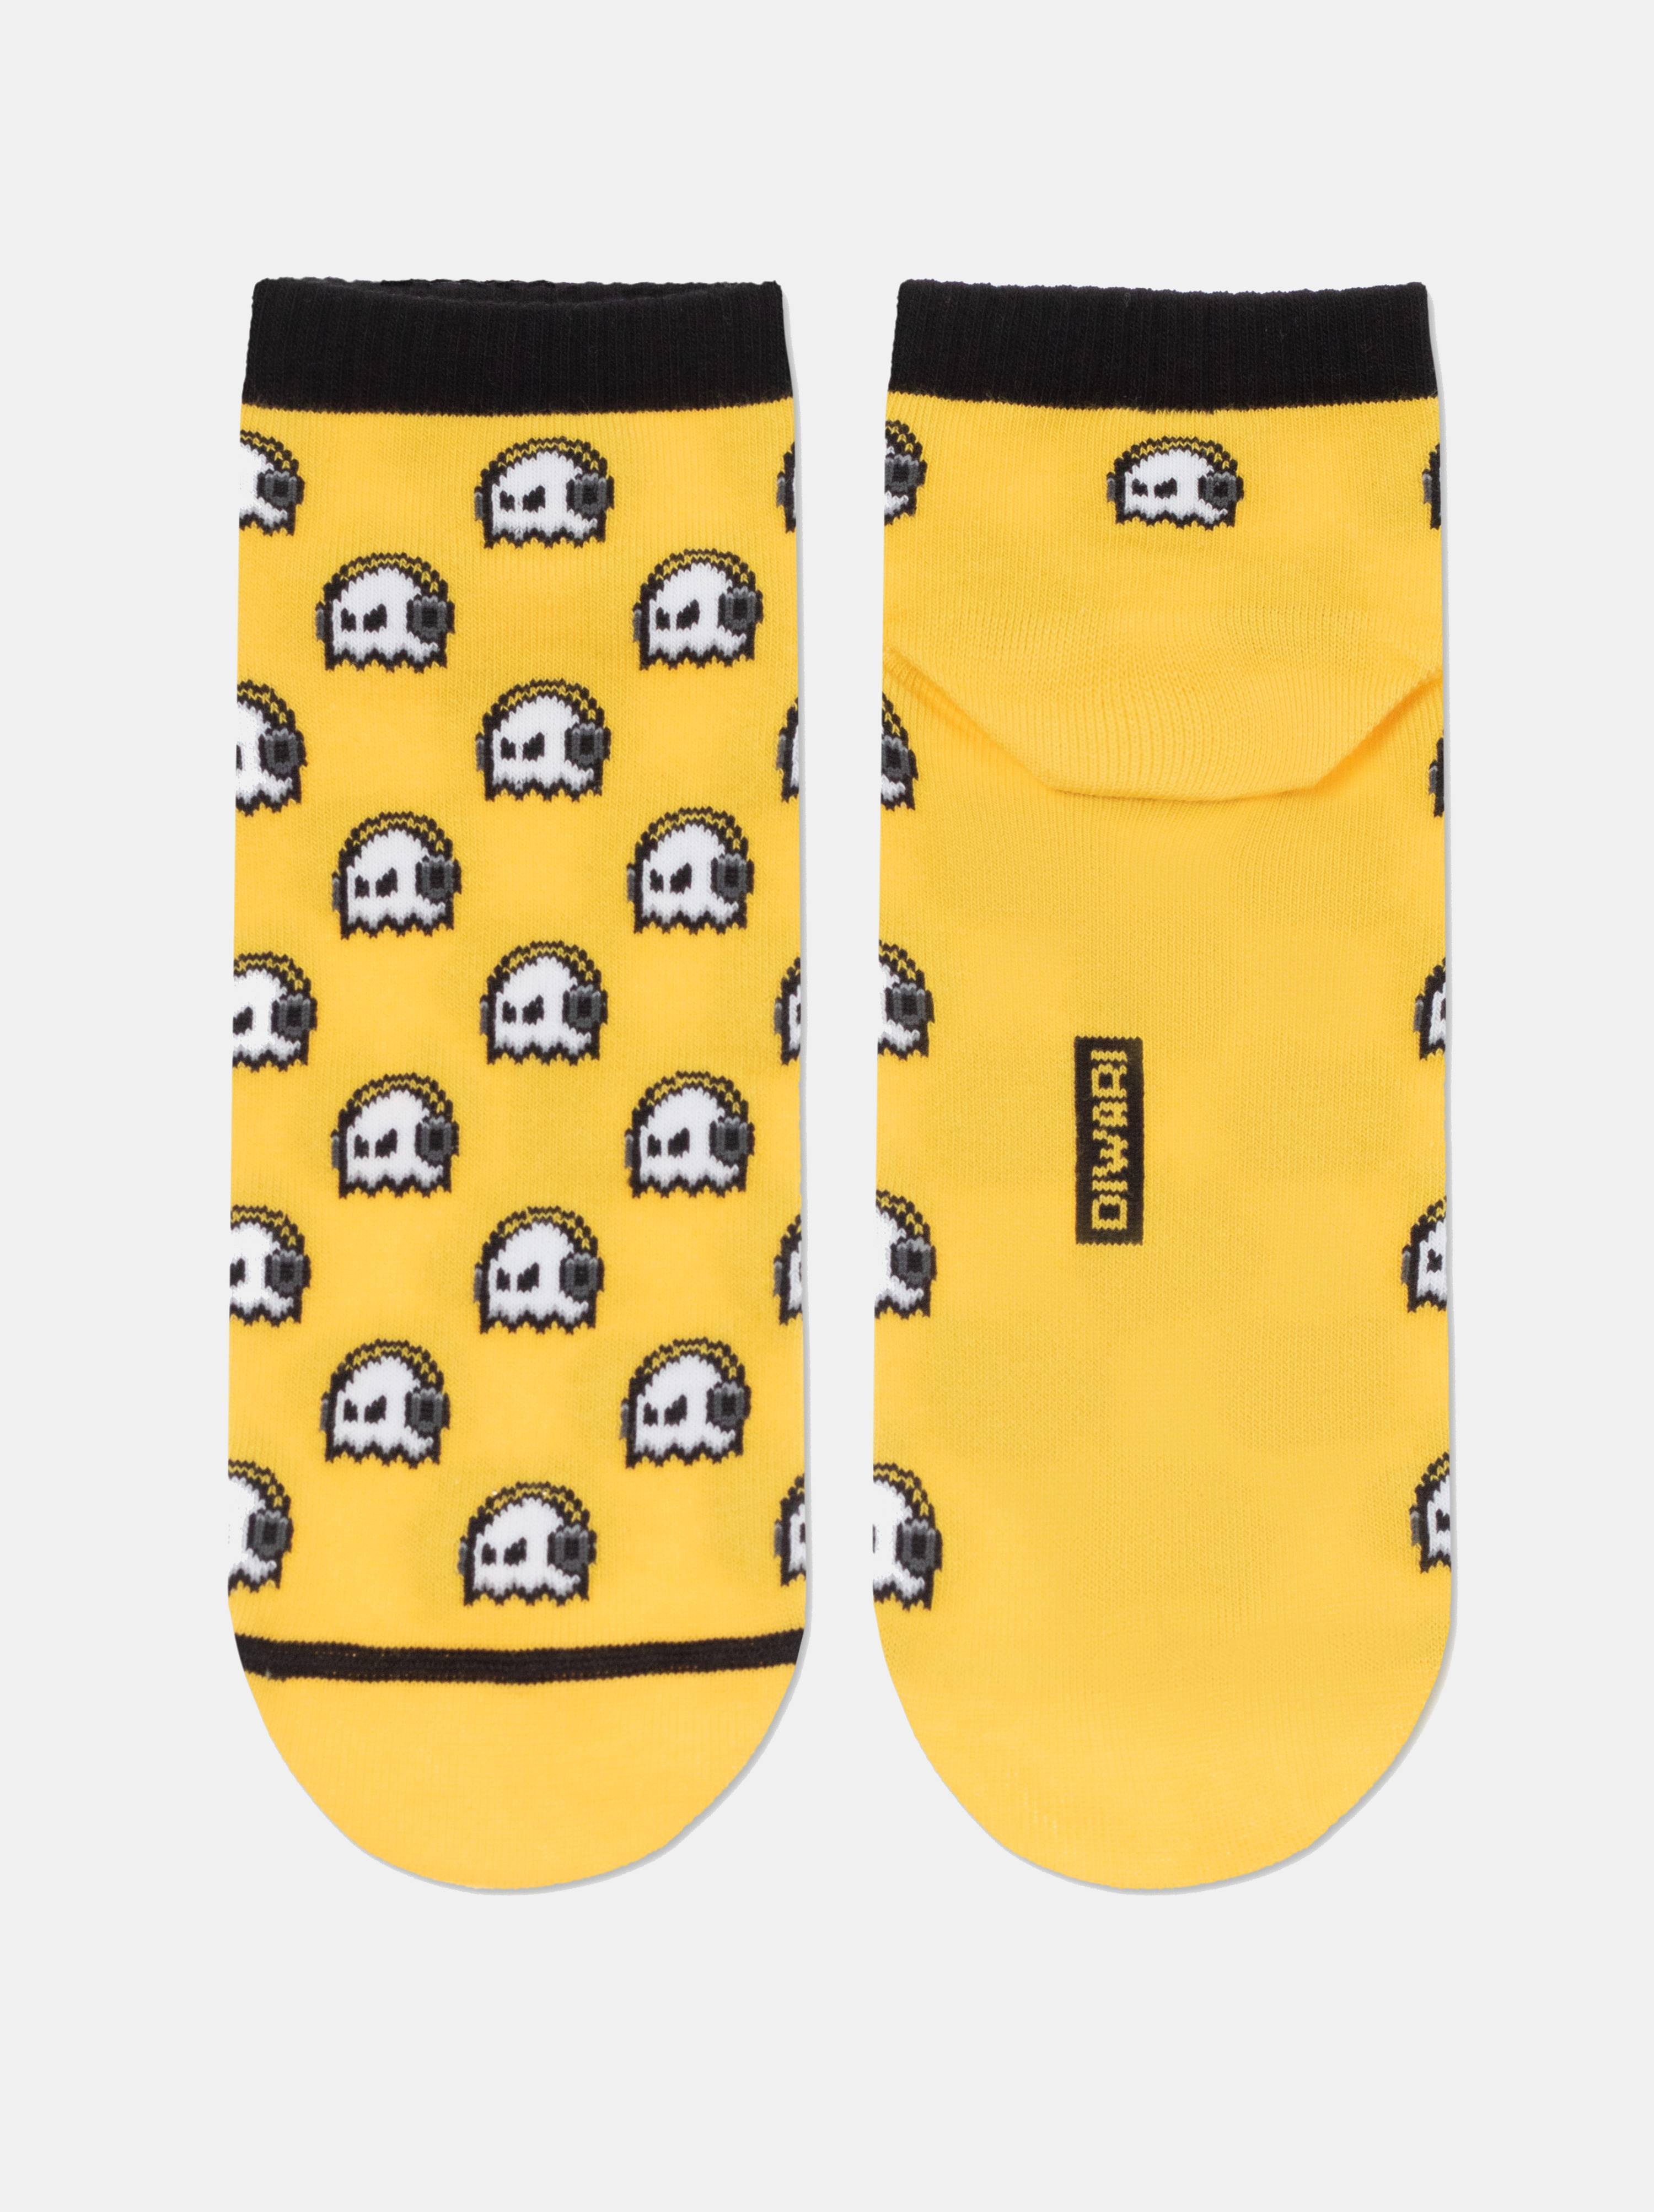 Укороченные носки из хлопка «Ghost» Conte желтого цвета